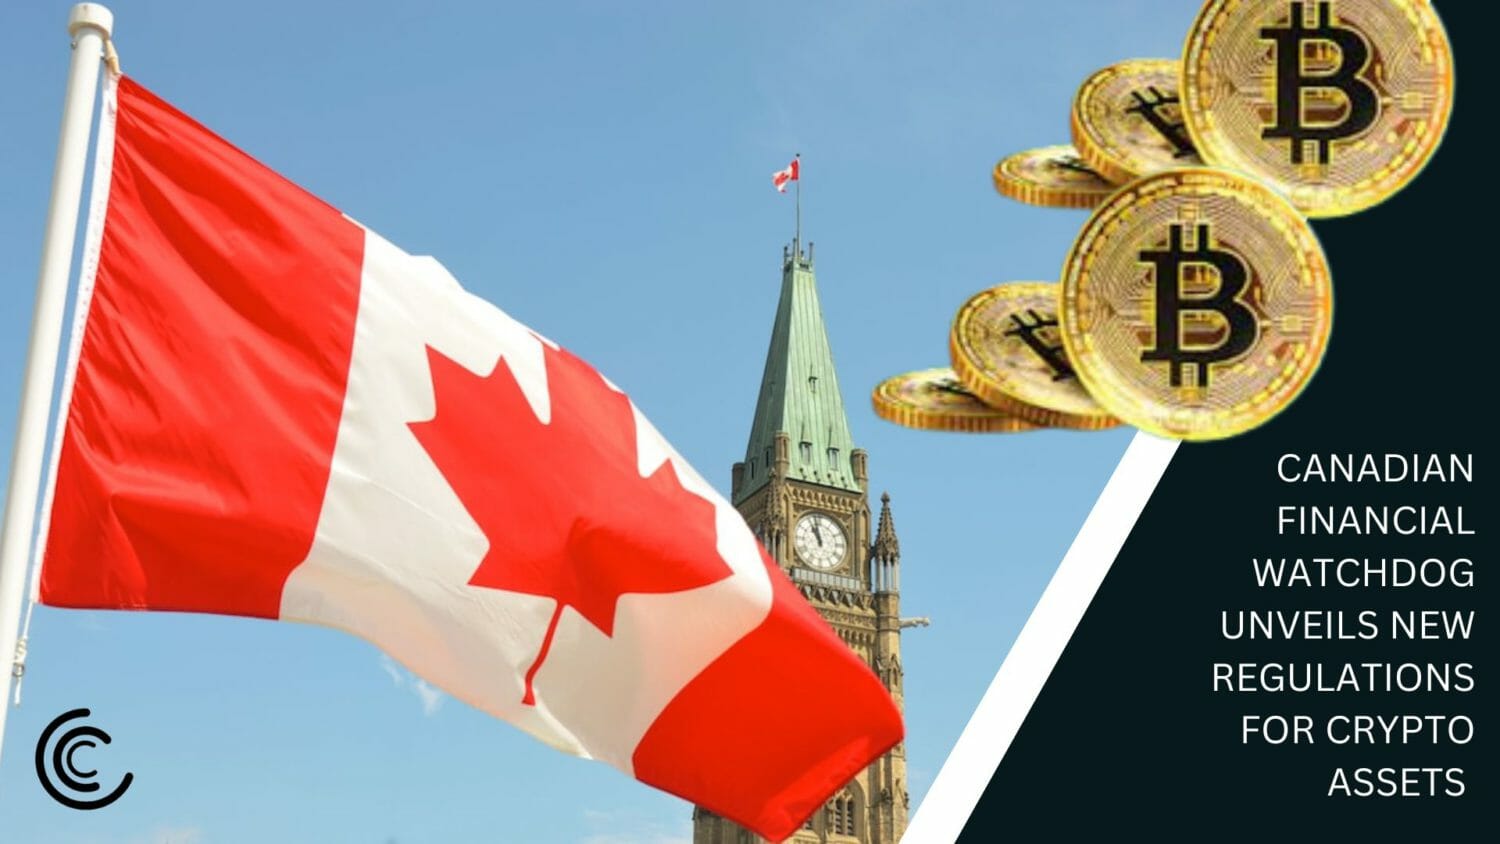 Ο Καναδικός Financial Watchdog αποκαλύπτει νέους κανονισμούς για τα Crypto Assets